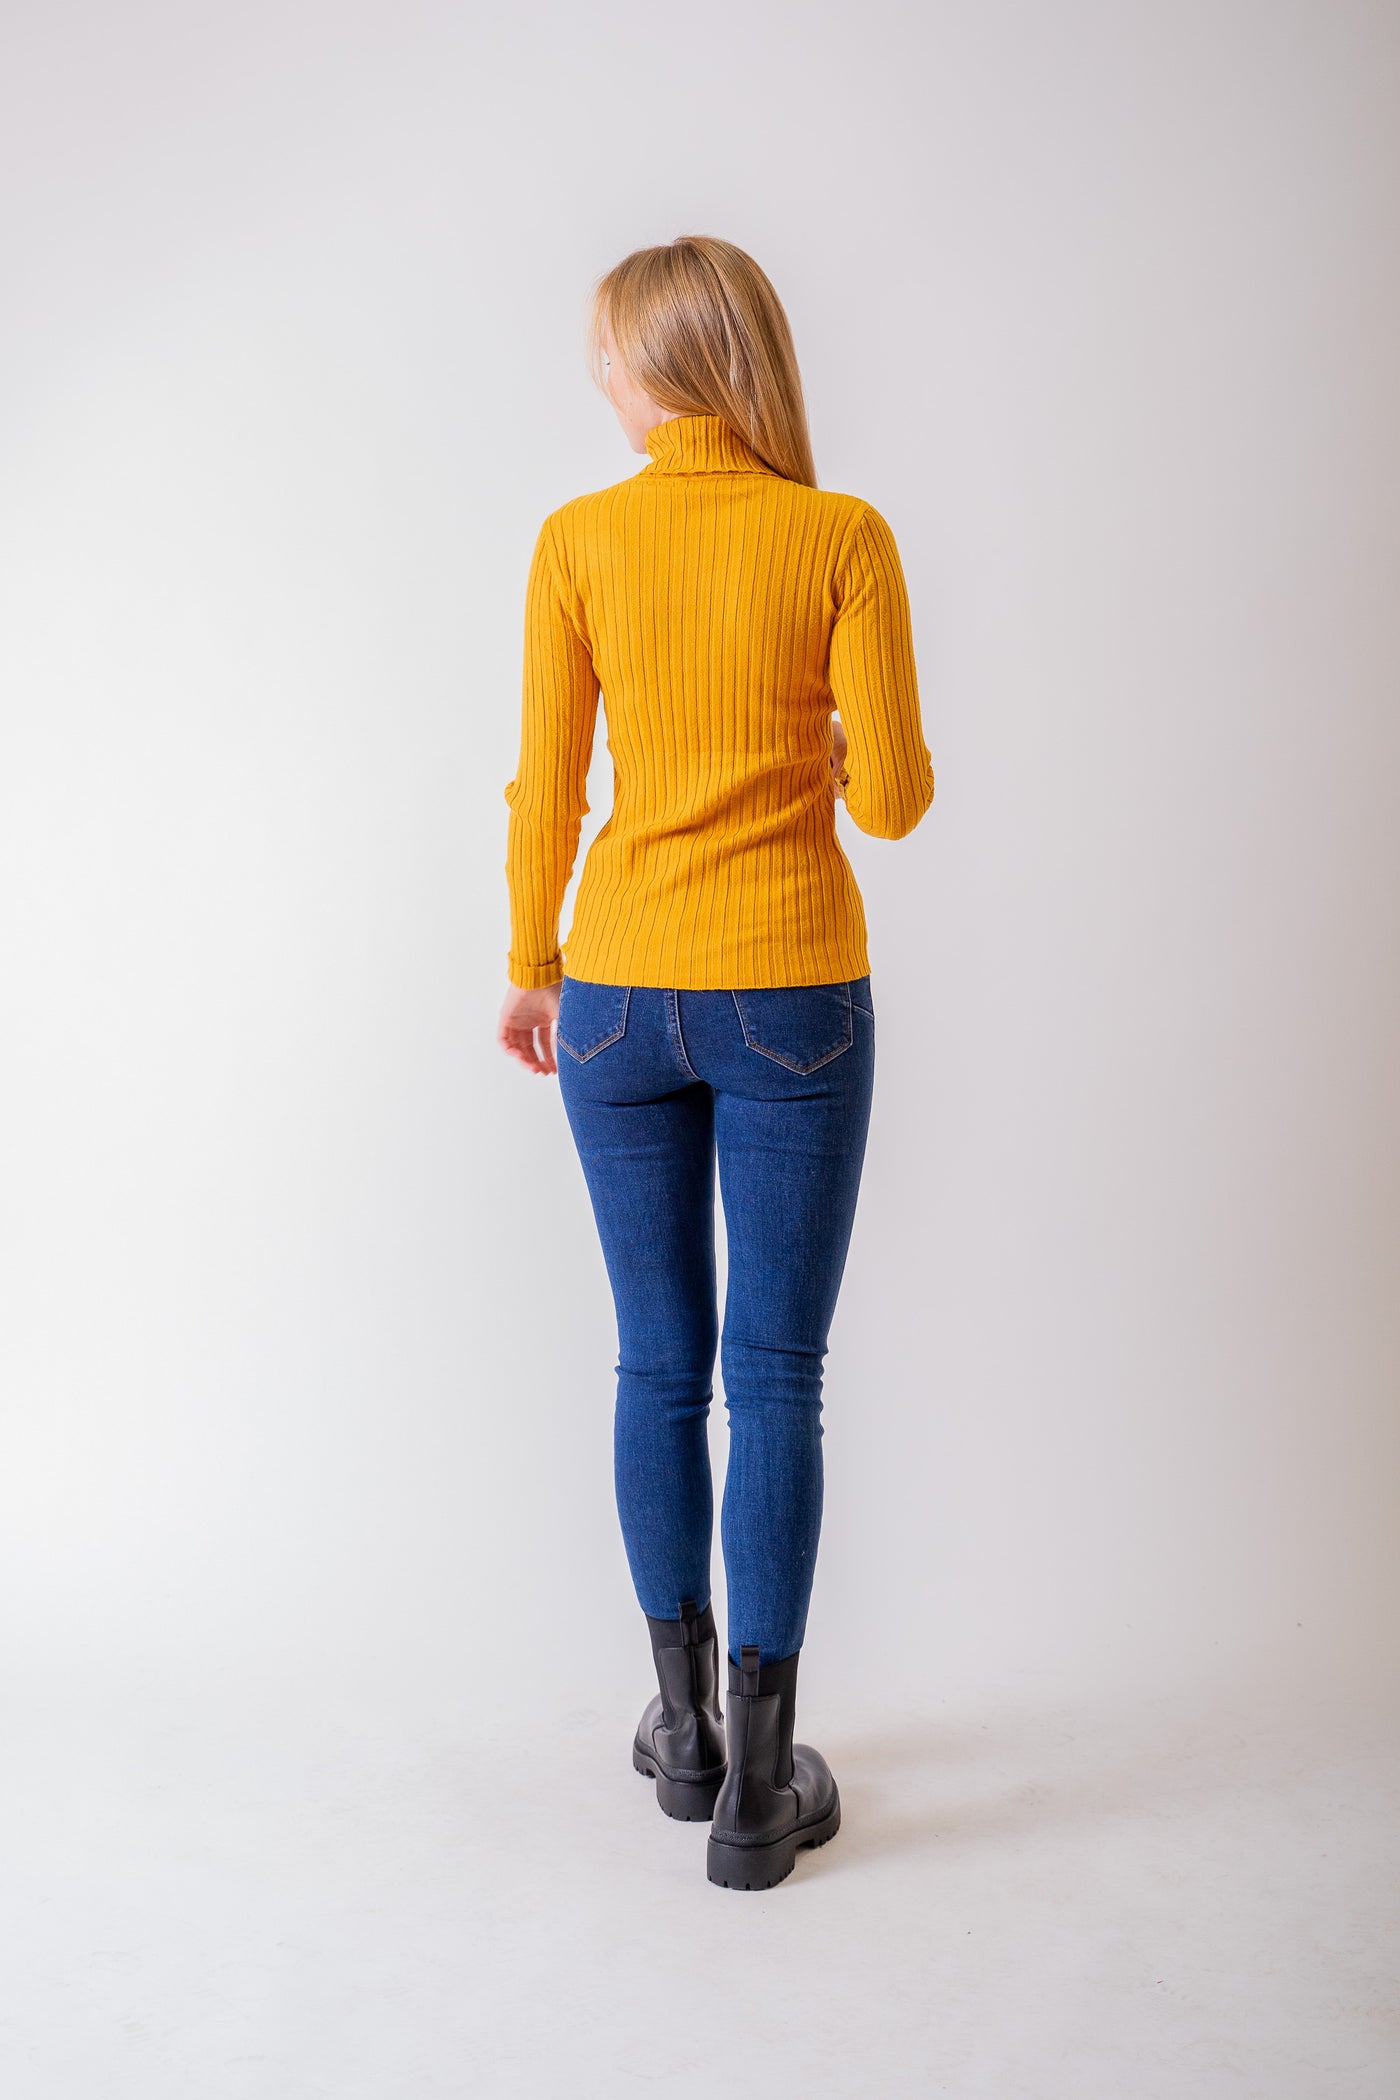 Žltý vrúbkovaný rolákový sveter - UNI - Top